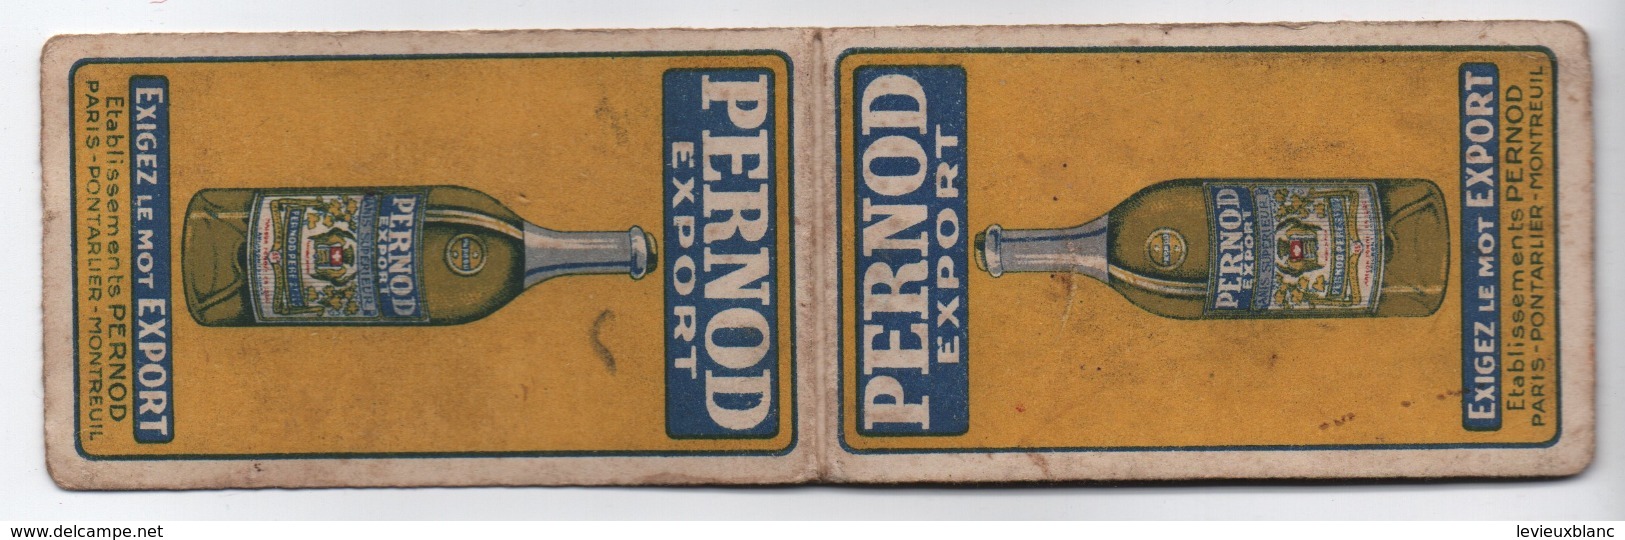 Petit Carnet Publicitaire/ Pernod Export/Exigez Le Mot Export/Paris - Pontarlier -Montreuil / Vers 1930        VPN241 - Andere & Zonder Classificatie